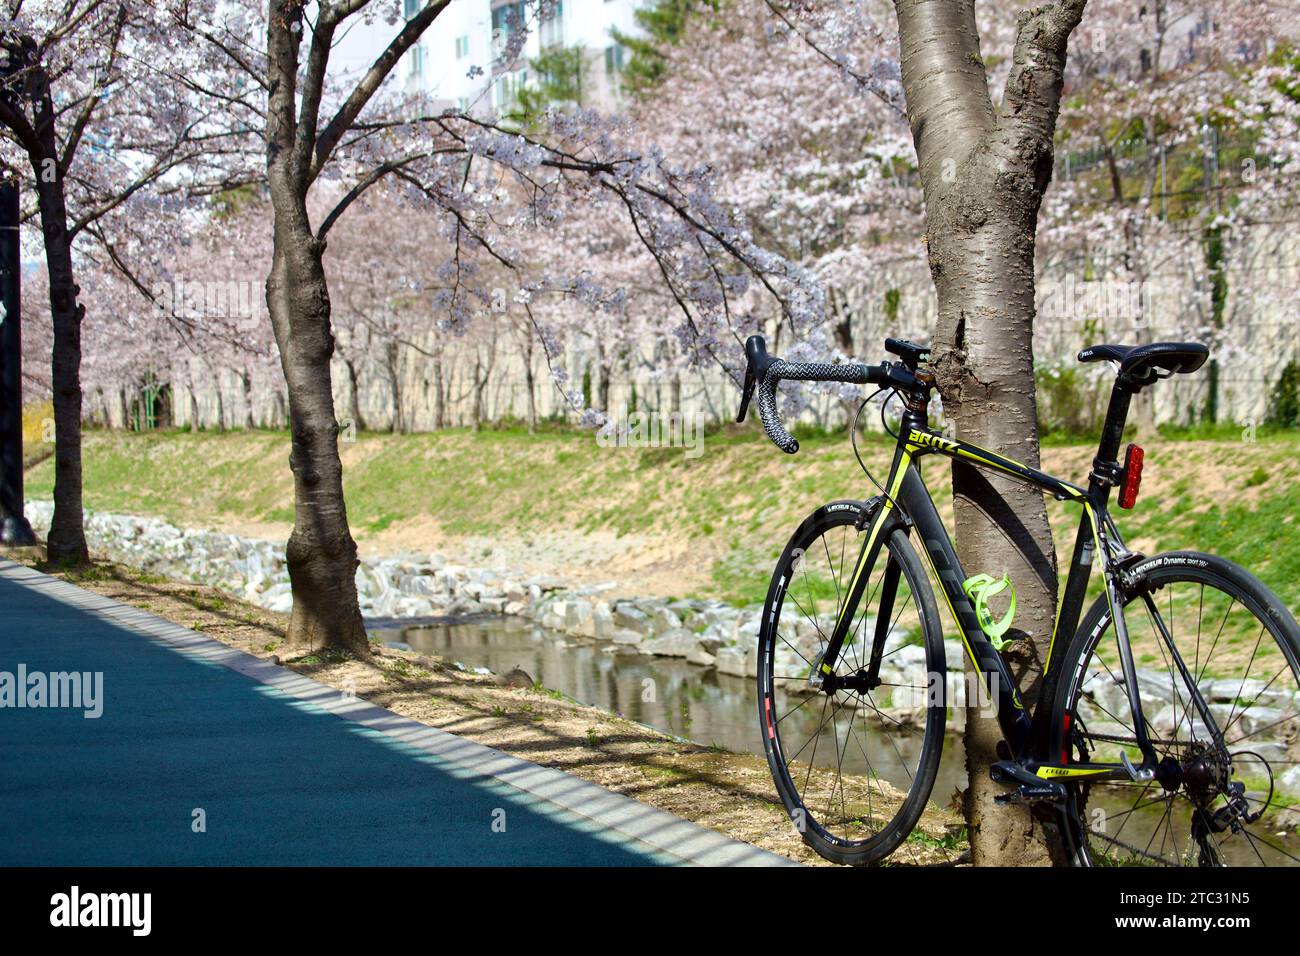 Ein Rennrad lehnt sich an einen Baum, eingerahmt von Kirschblüten über dem Kopf und einem ruhigen Bach darunter, der das Wesen einer ruhigen Frühlingsfahrt einfängt. Stockfoto